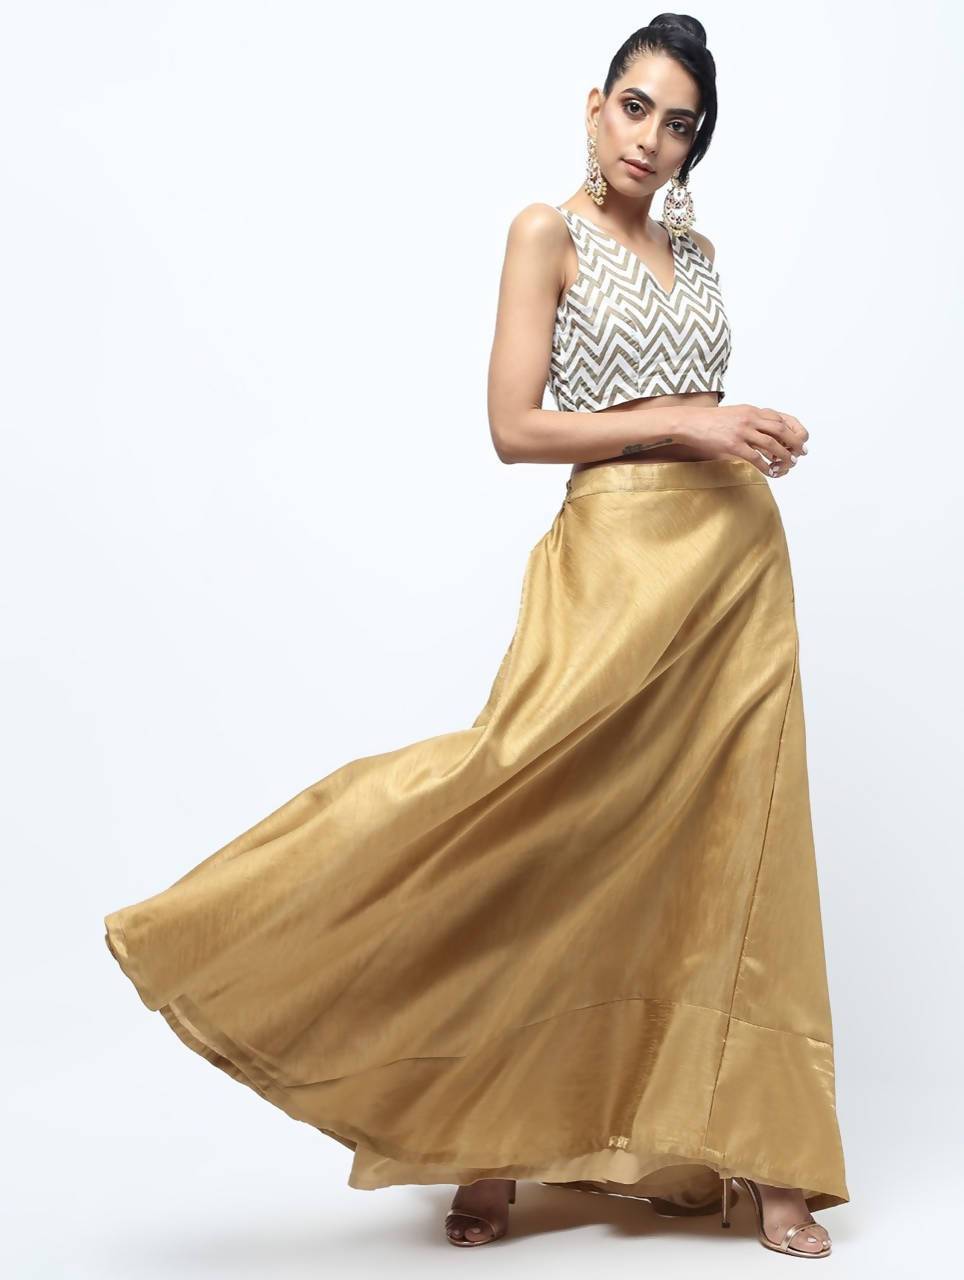 Women's Golden Silk Blend Skirt - Cheera USA